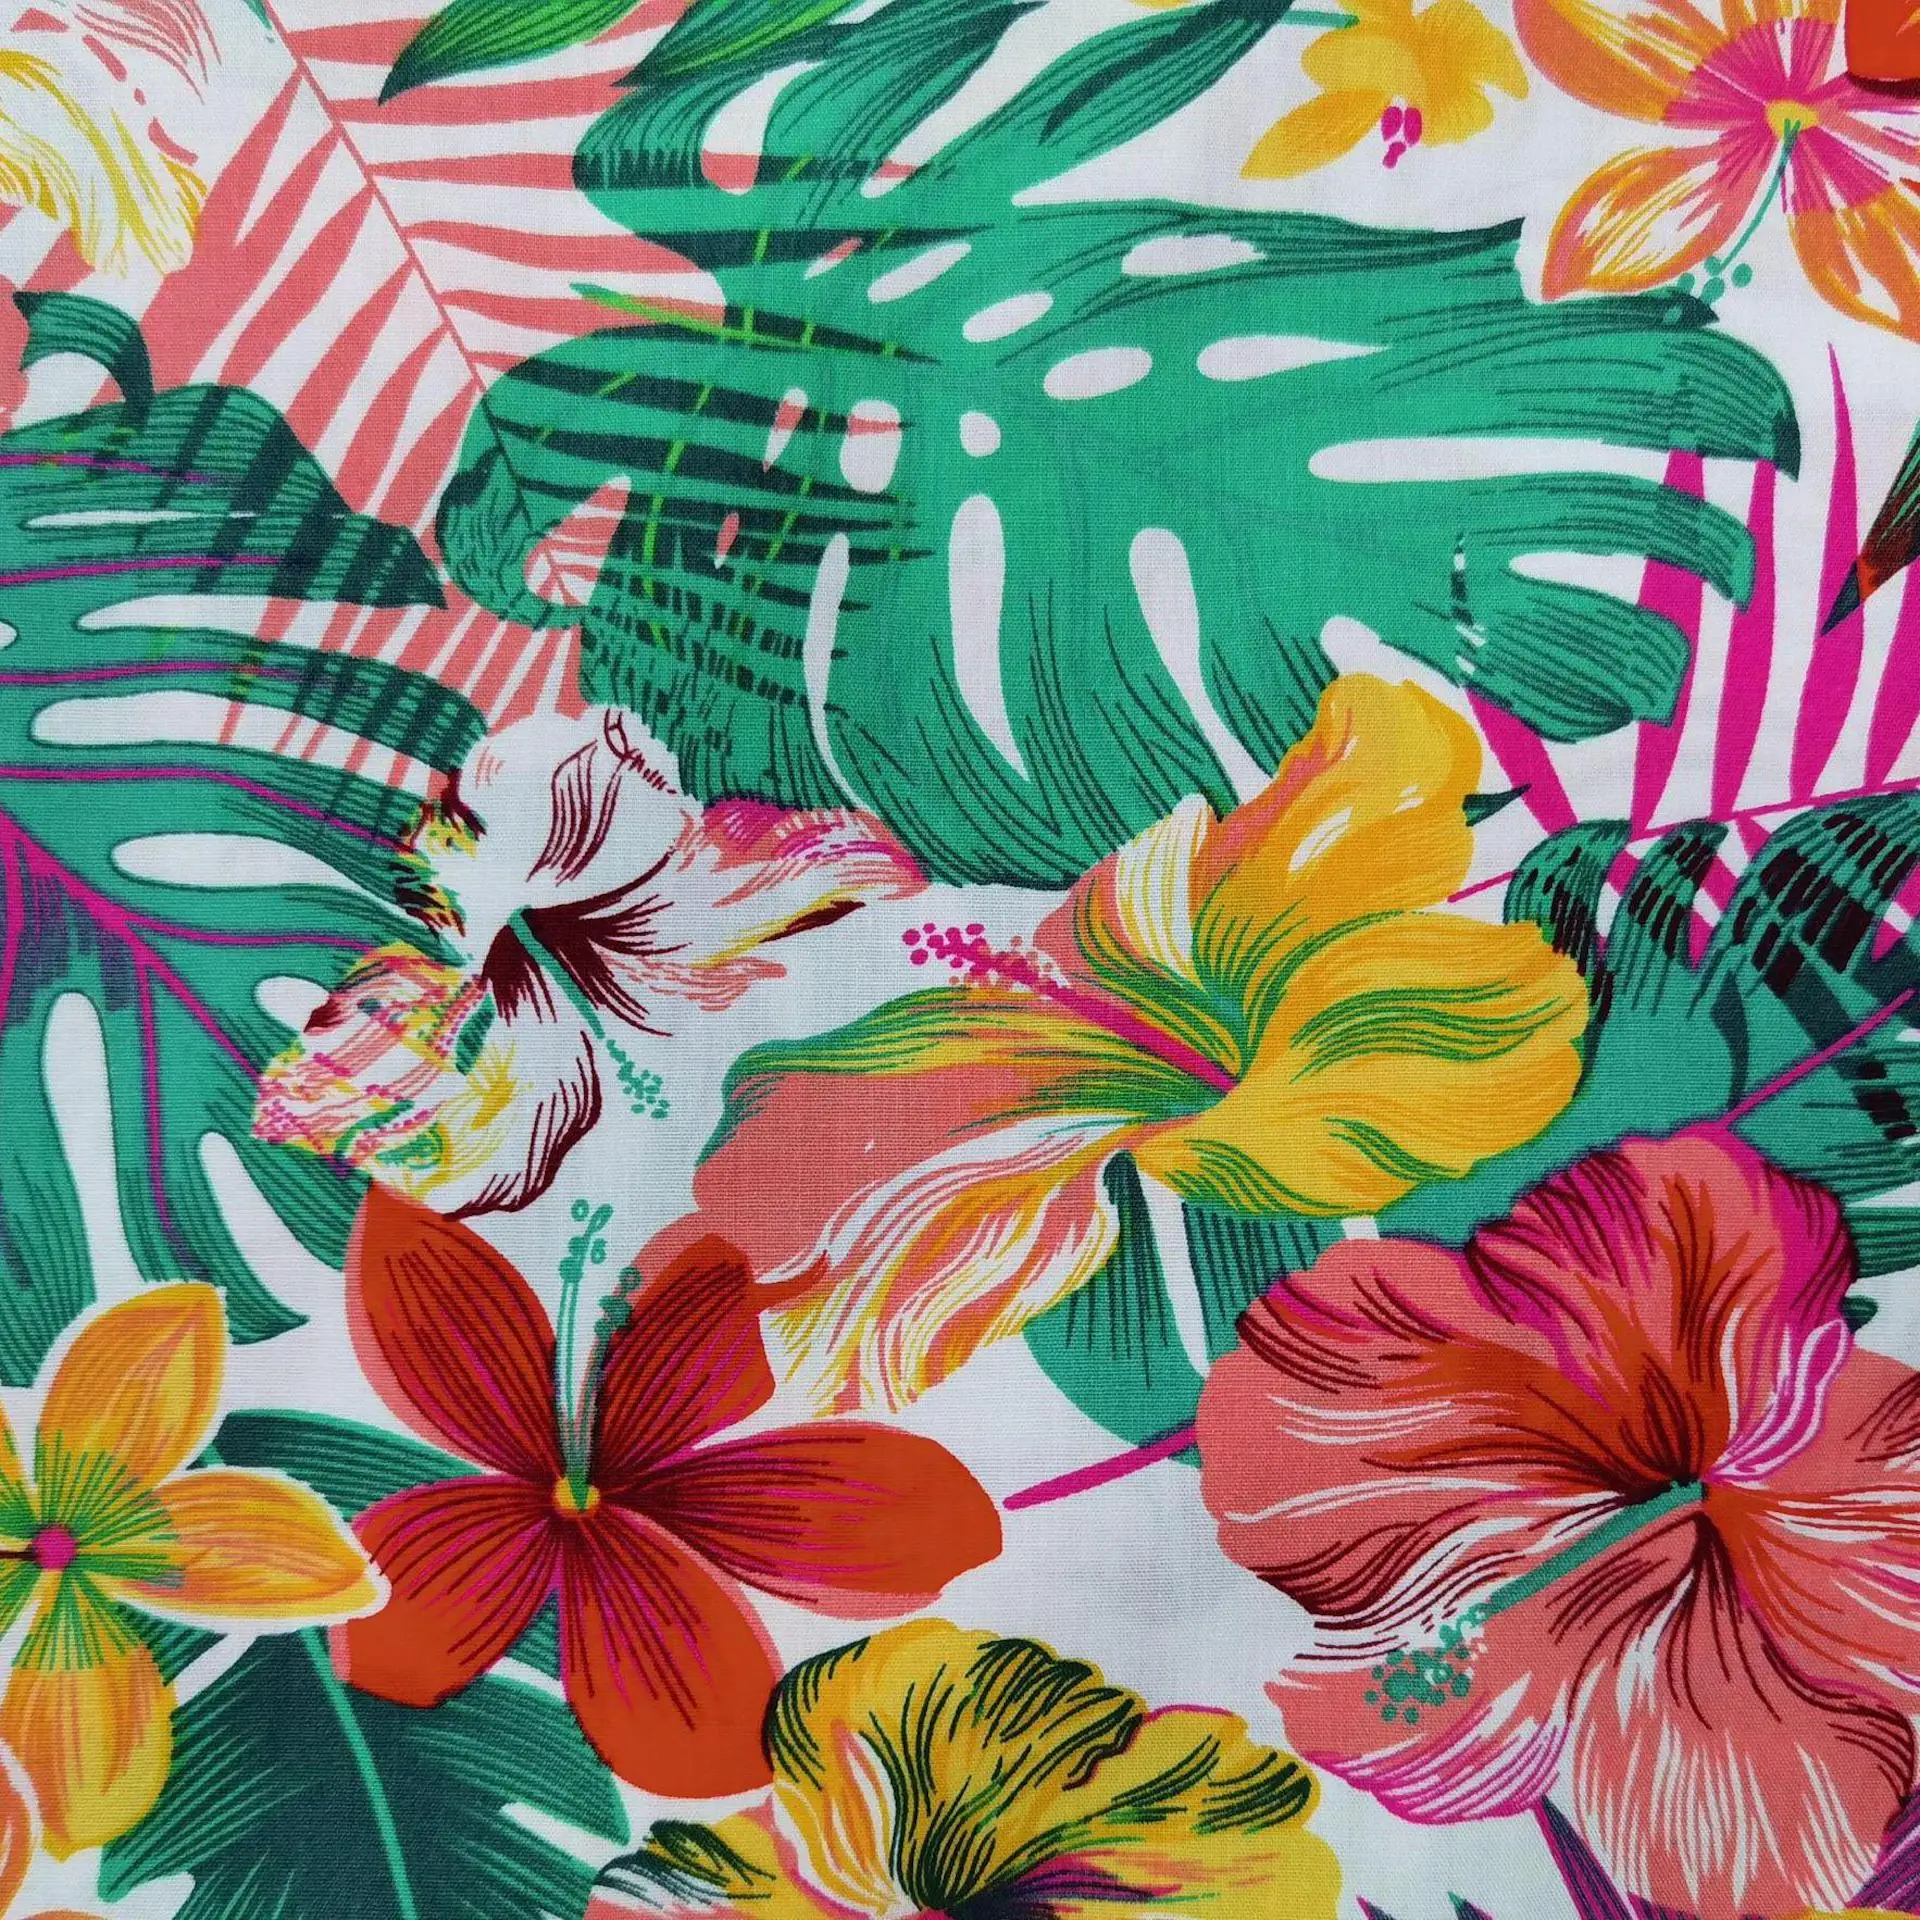 
Ткань хлопок поплин для постельных принадлежностей Печать Горячая Распродажа различные цвета Новые Гавайские тропические листья 100% хлопок рубашка чёсаные тканые 148 см 